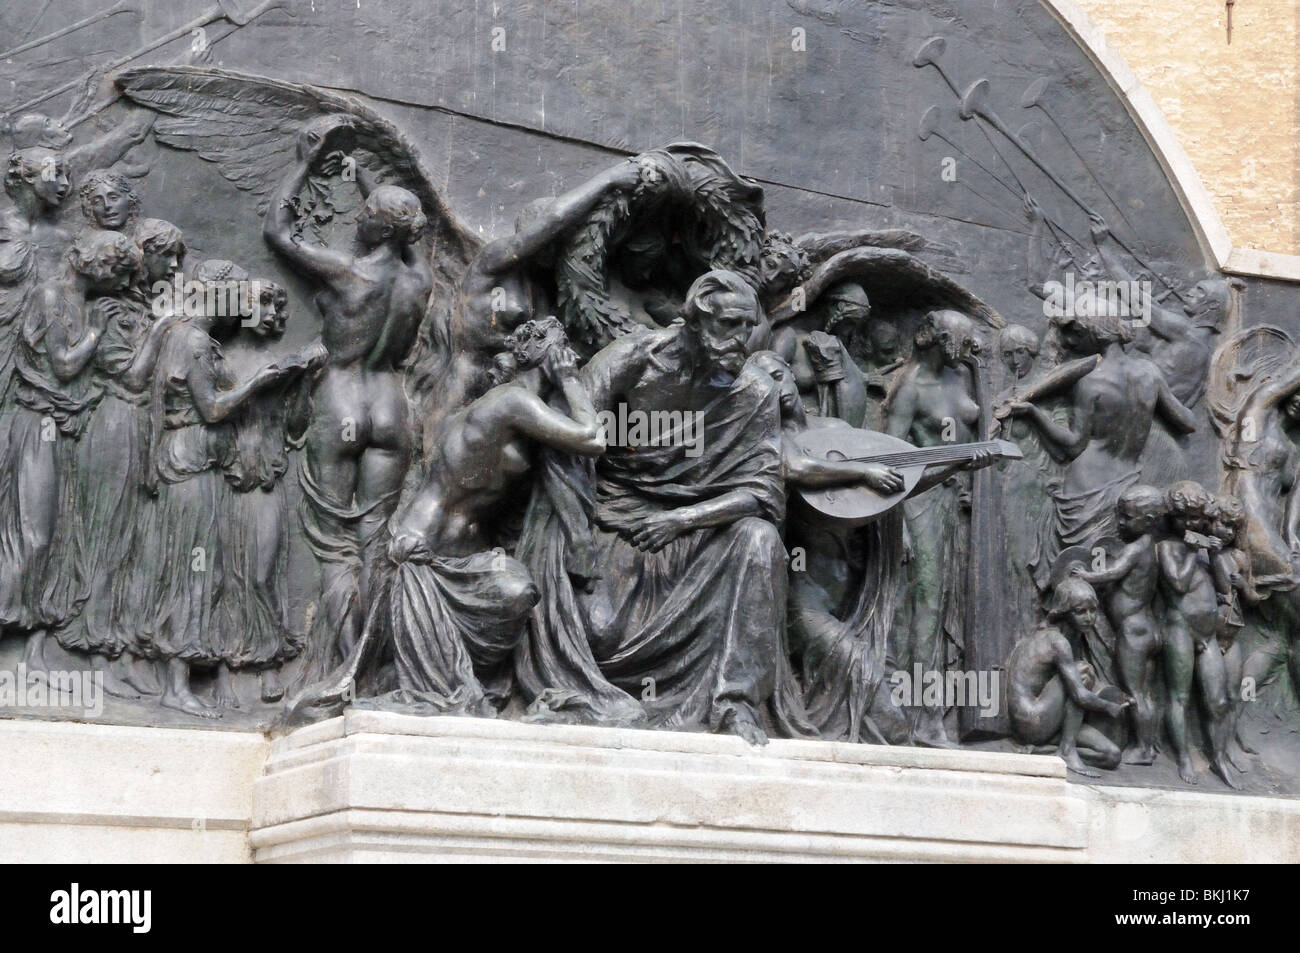 Estatua de bronce de Giuseppe Verdi monumento en el parque público llamada Piazza della Pace de Parma, Italia Foto de stock